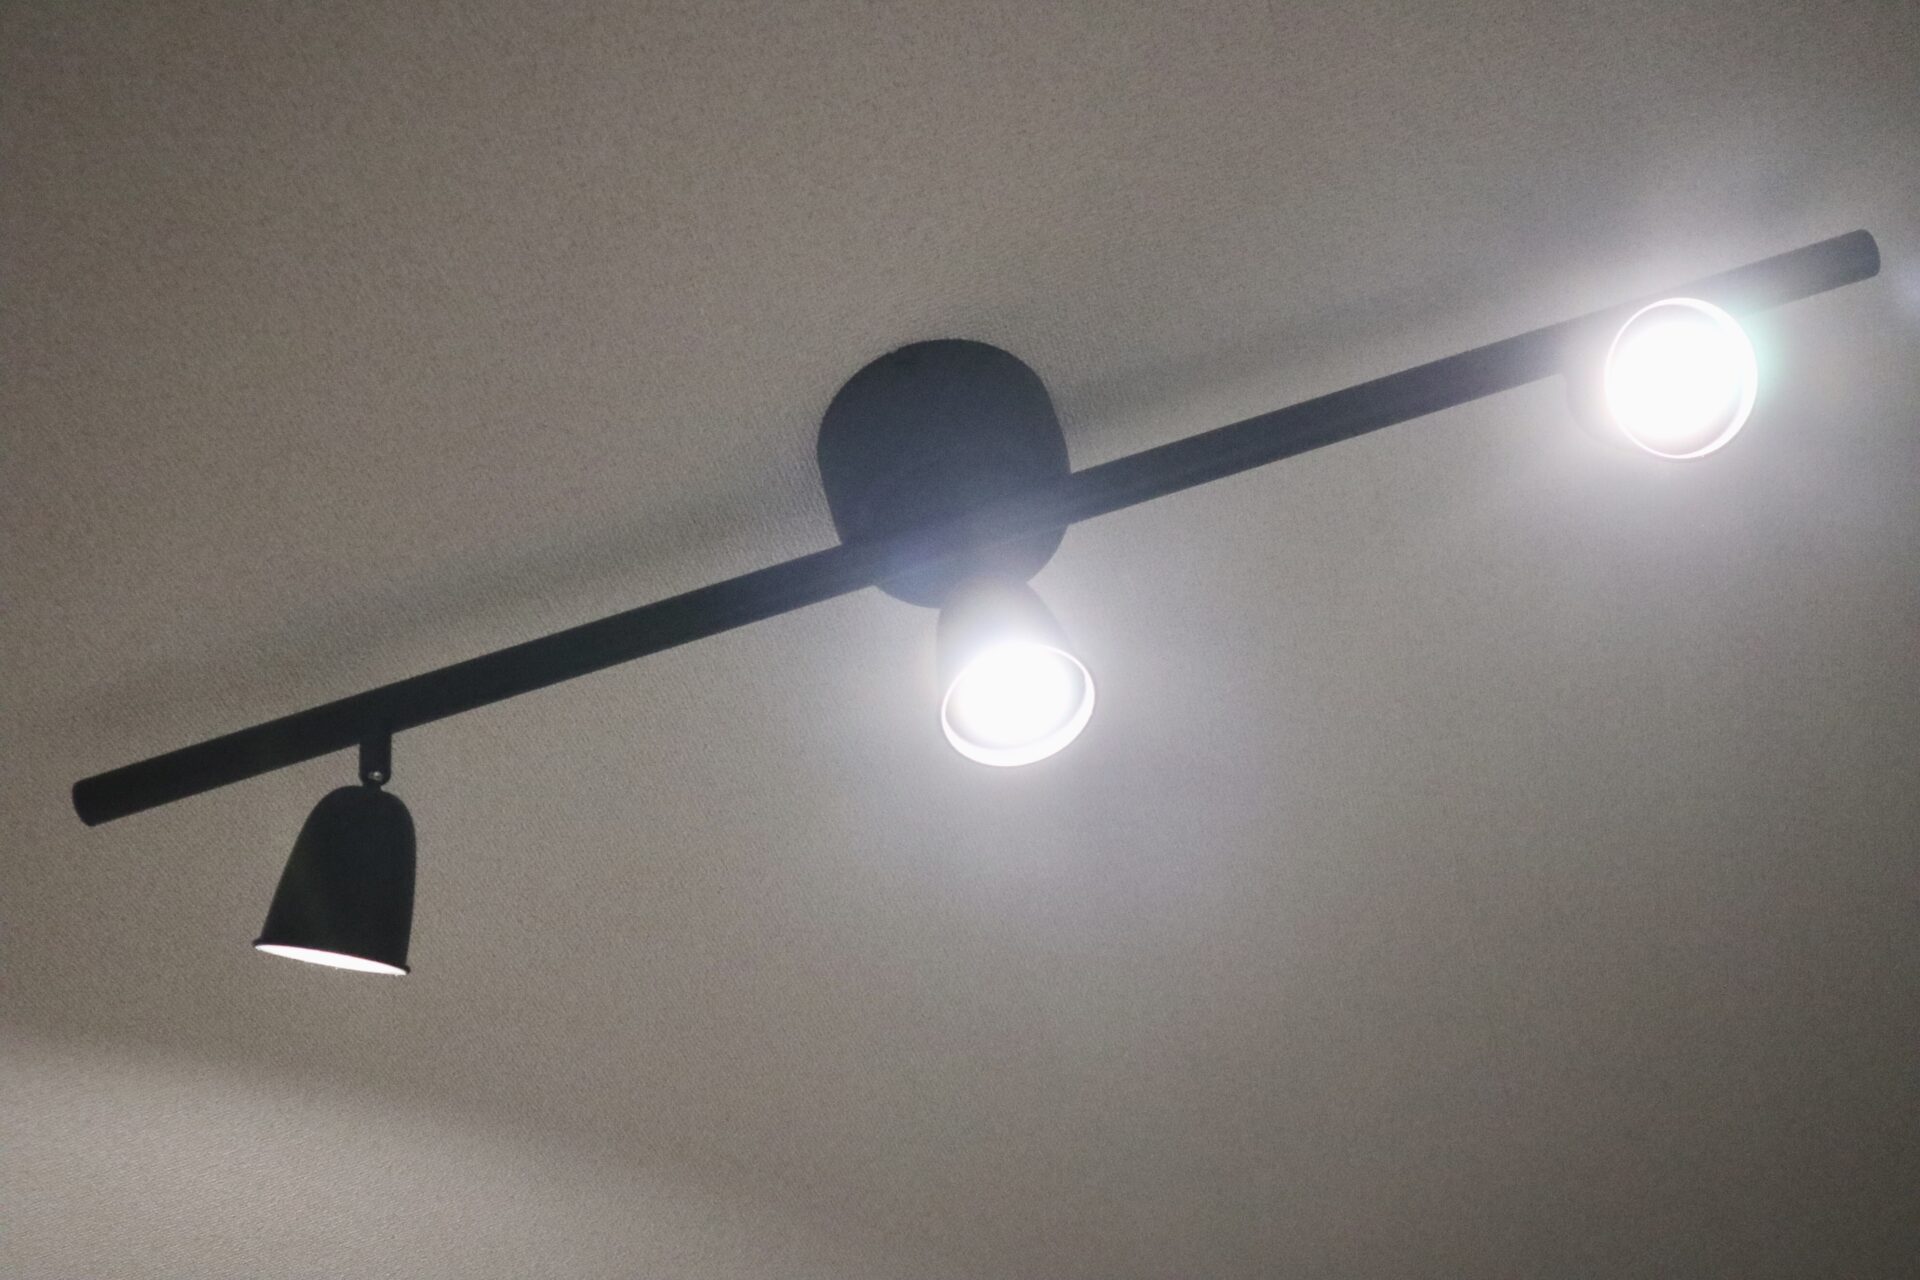 IKEA(イケア)のシーリングスポットライト』✕『リモコン式の調光電球 